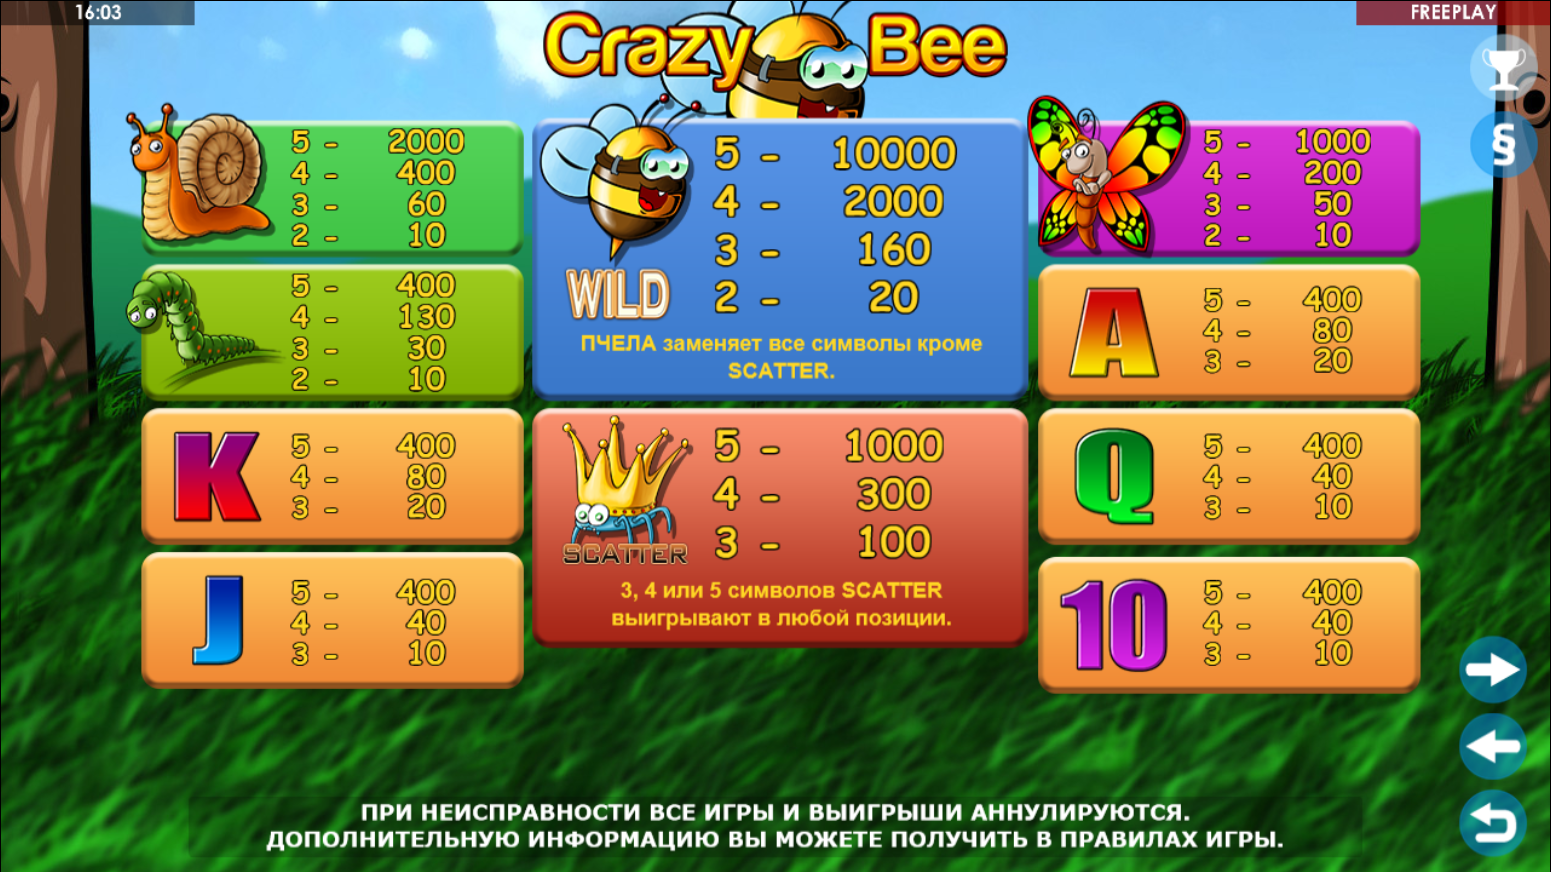 Оформление и интерфейс игрового автомата Crazy Bee